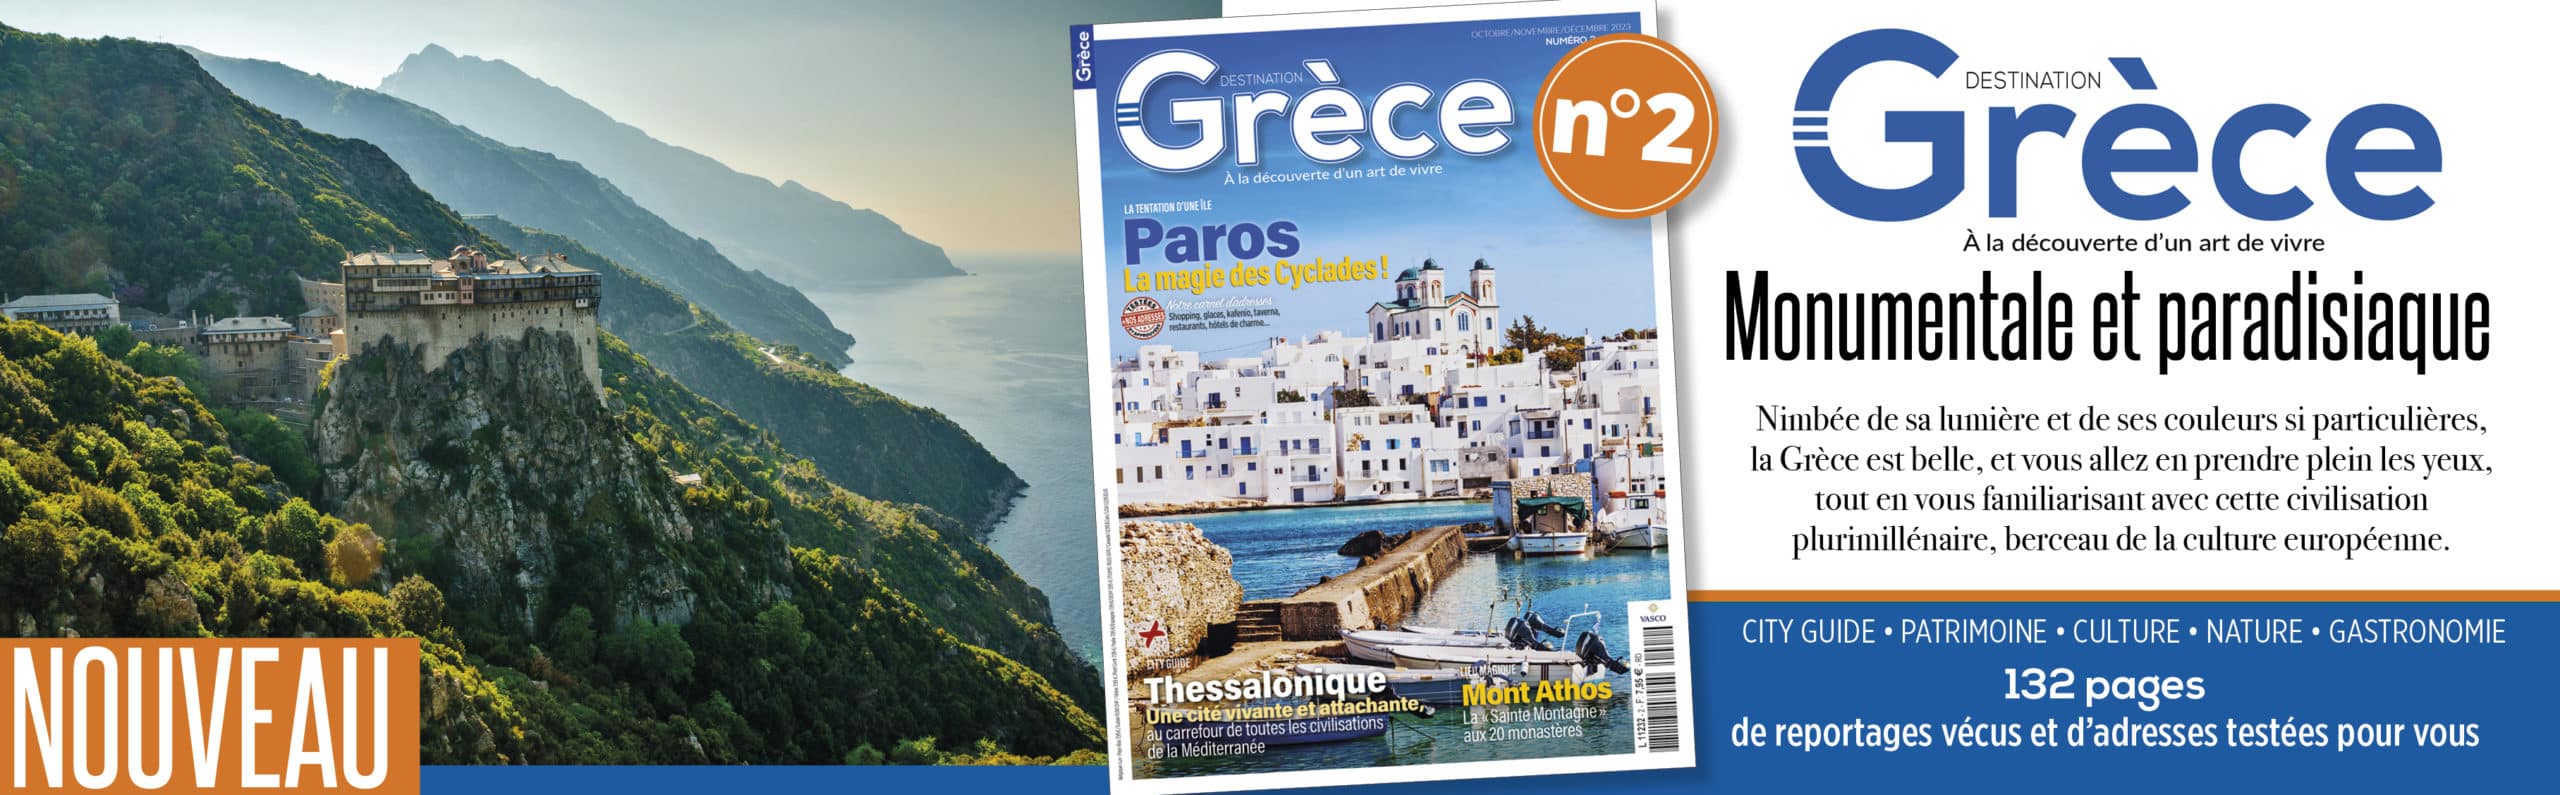 Bannière Destination Grèce n°2